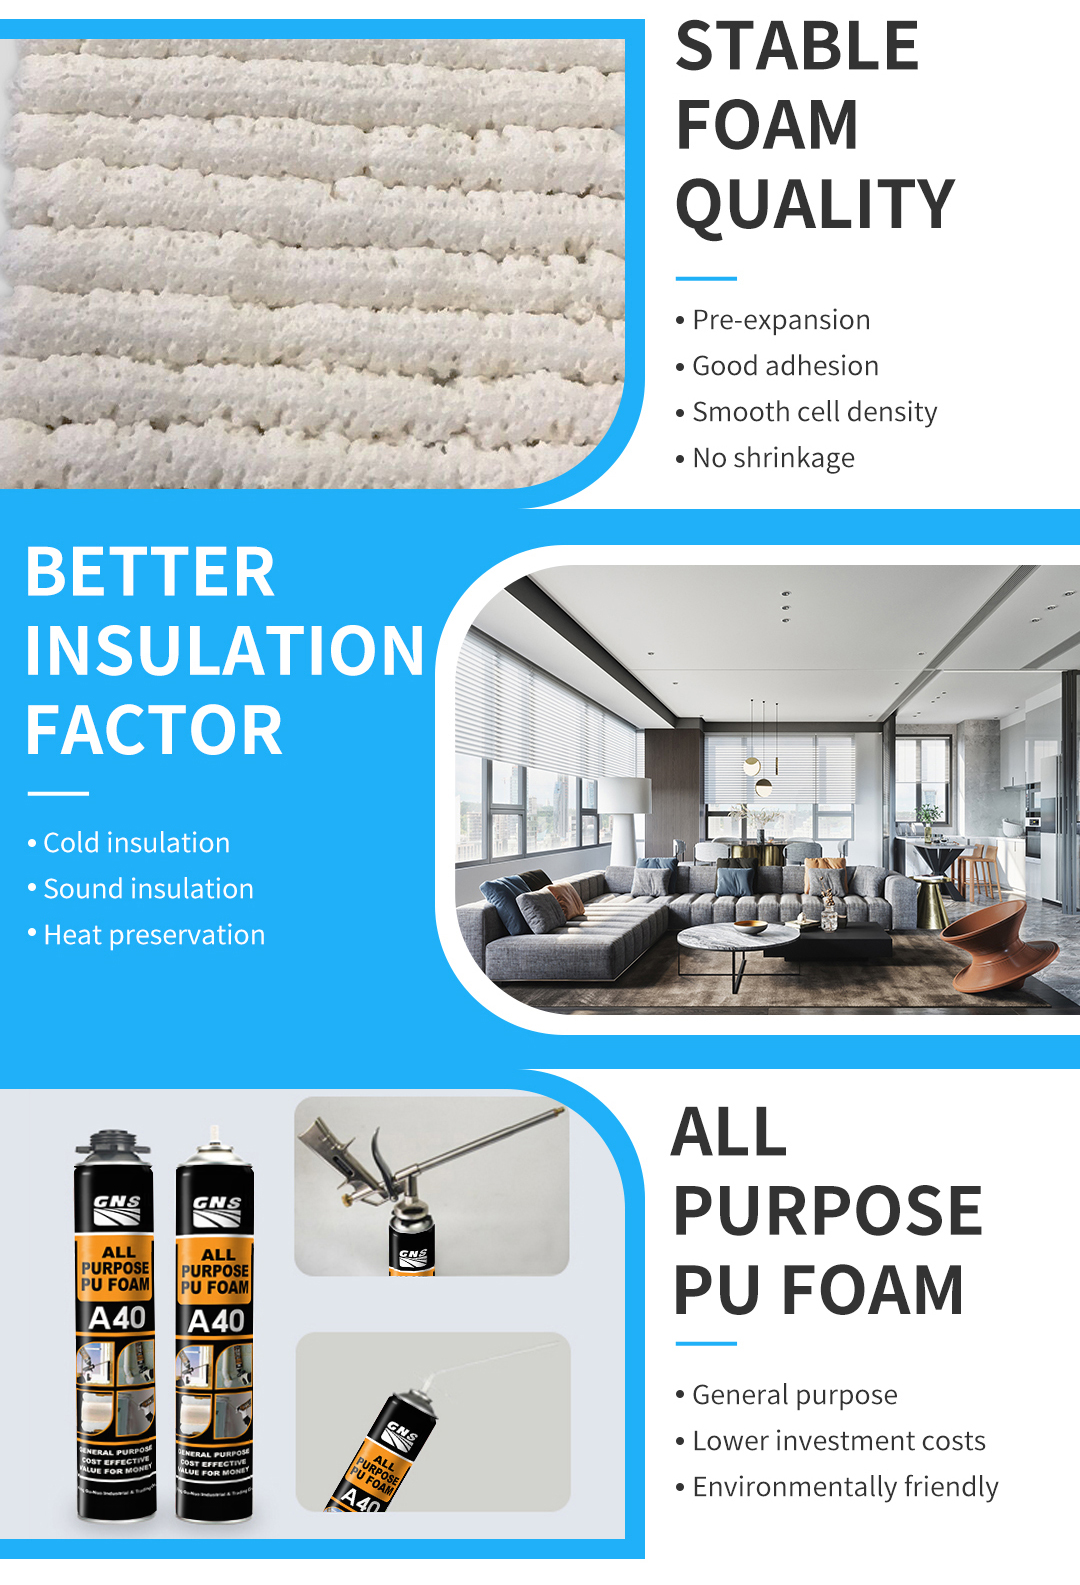 All Purpose PU Foam Manual Type